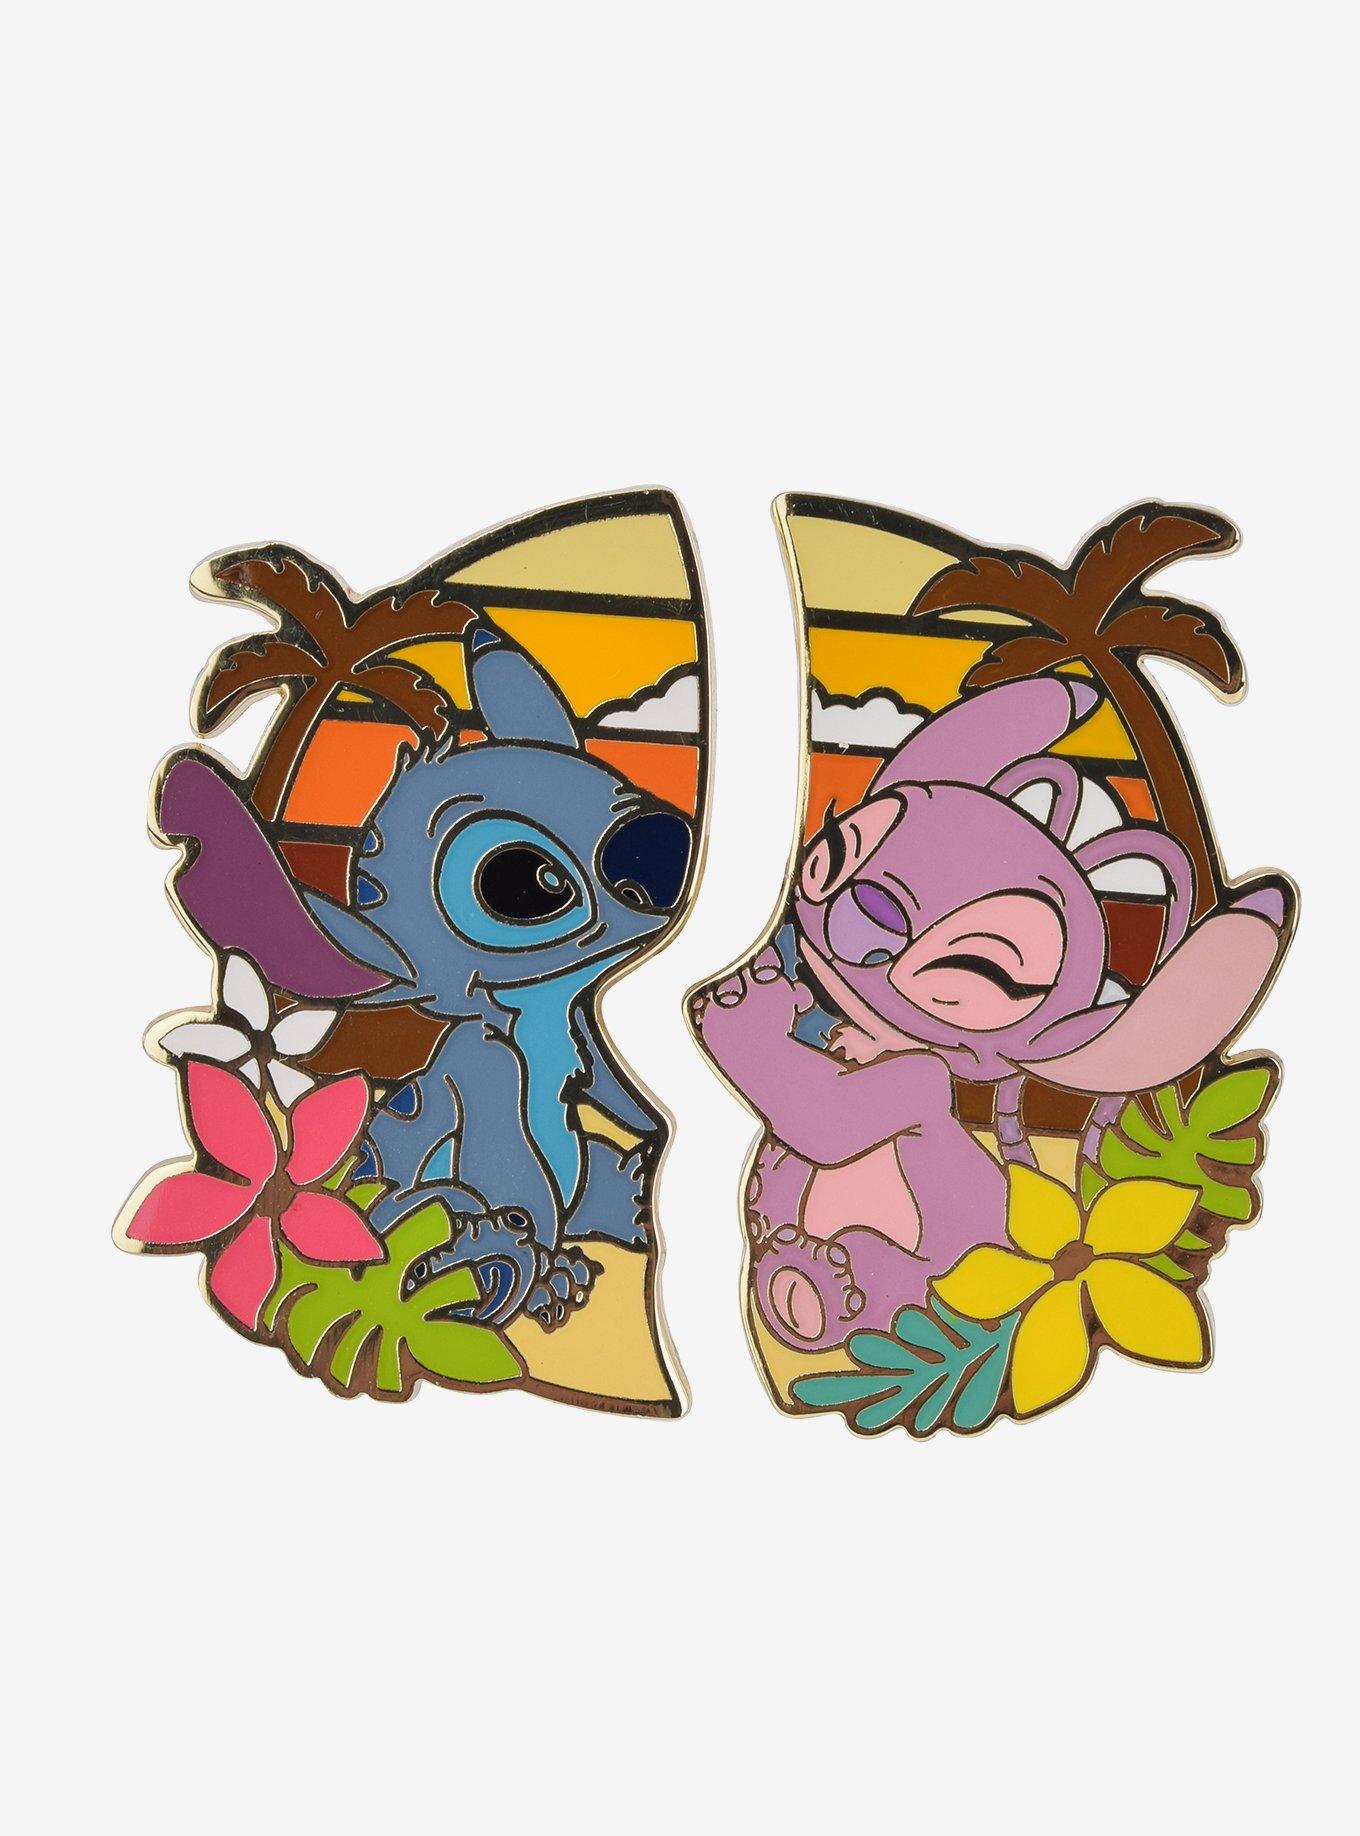 Disney Stitch Character Lilo And Stitch Pin